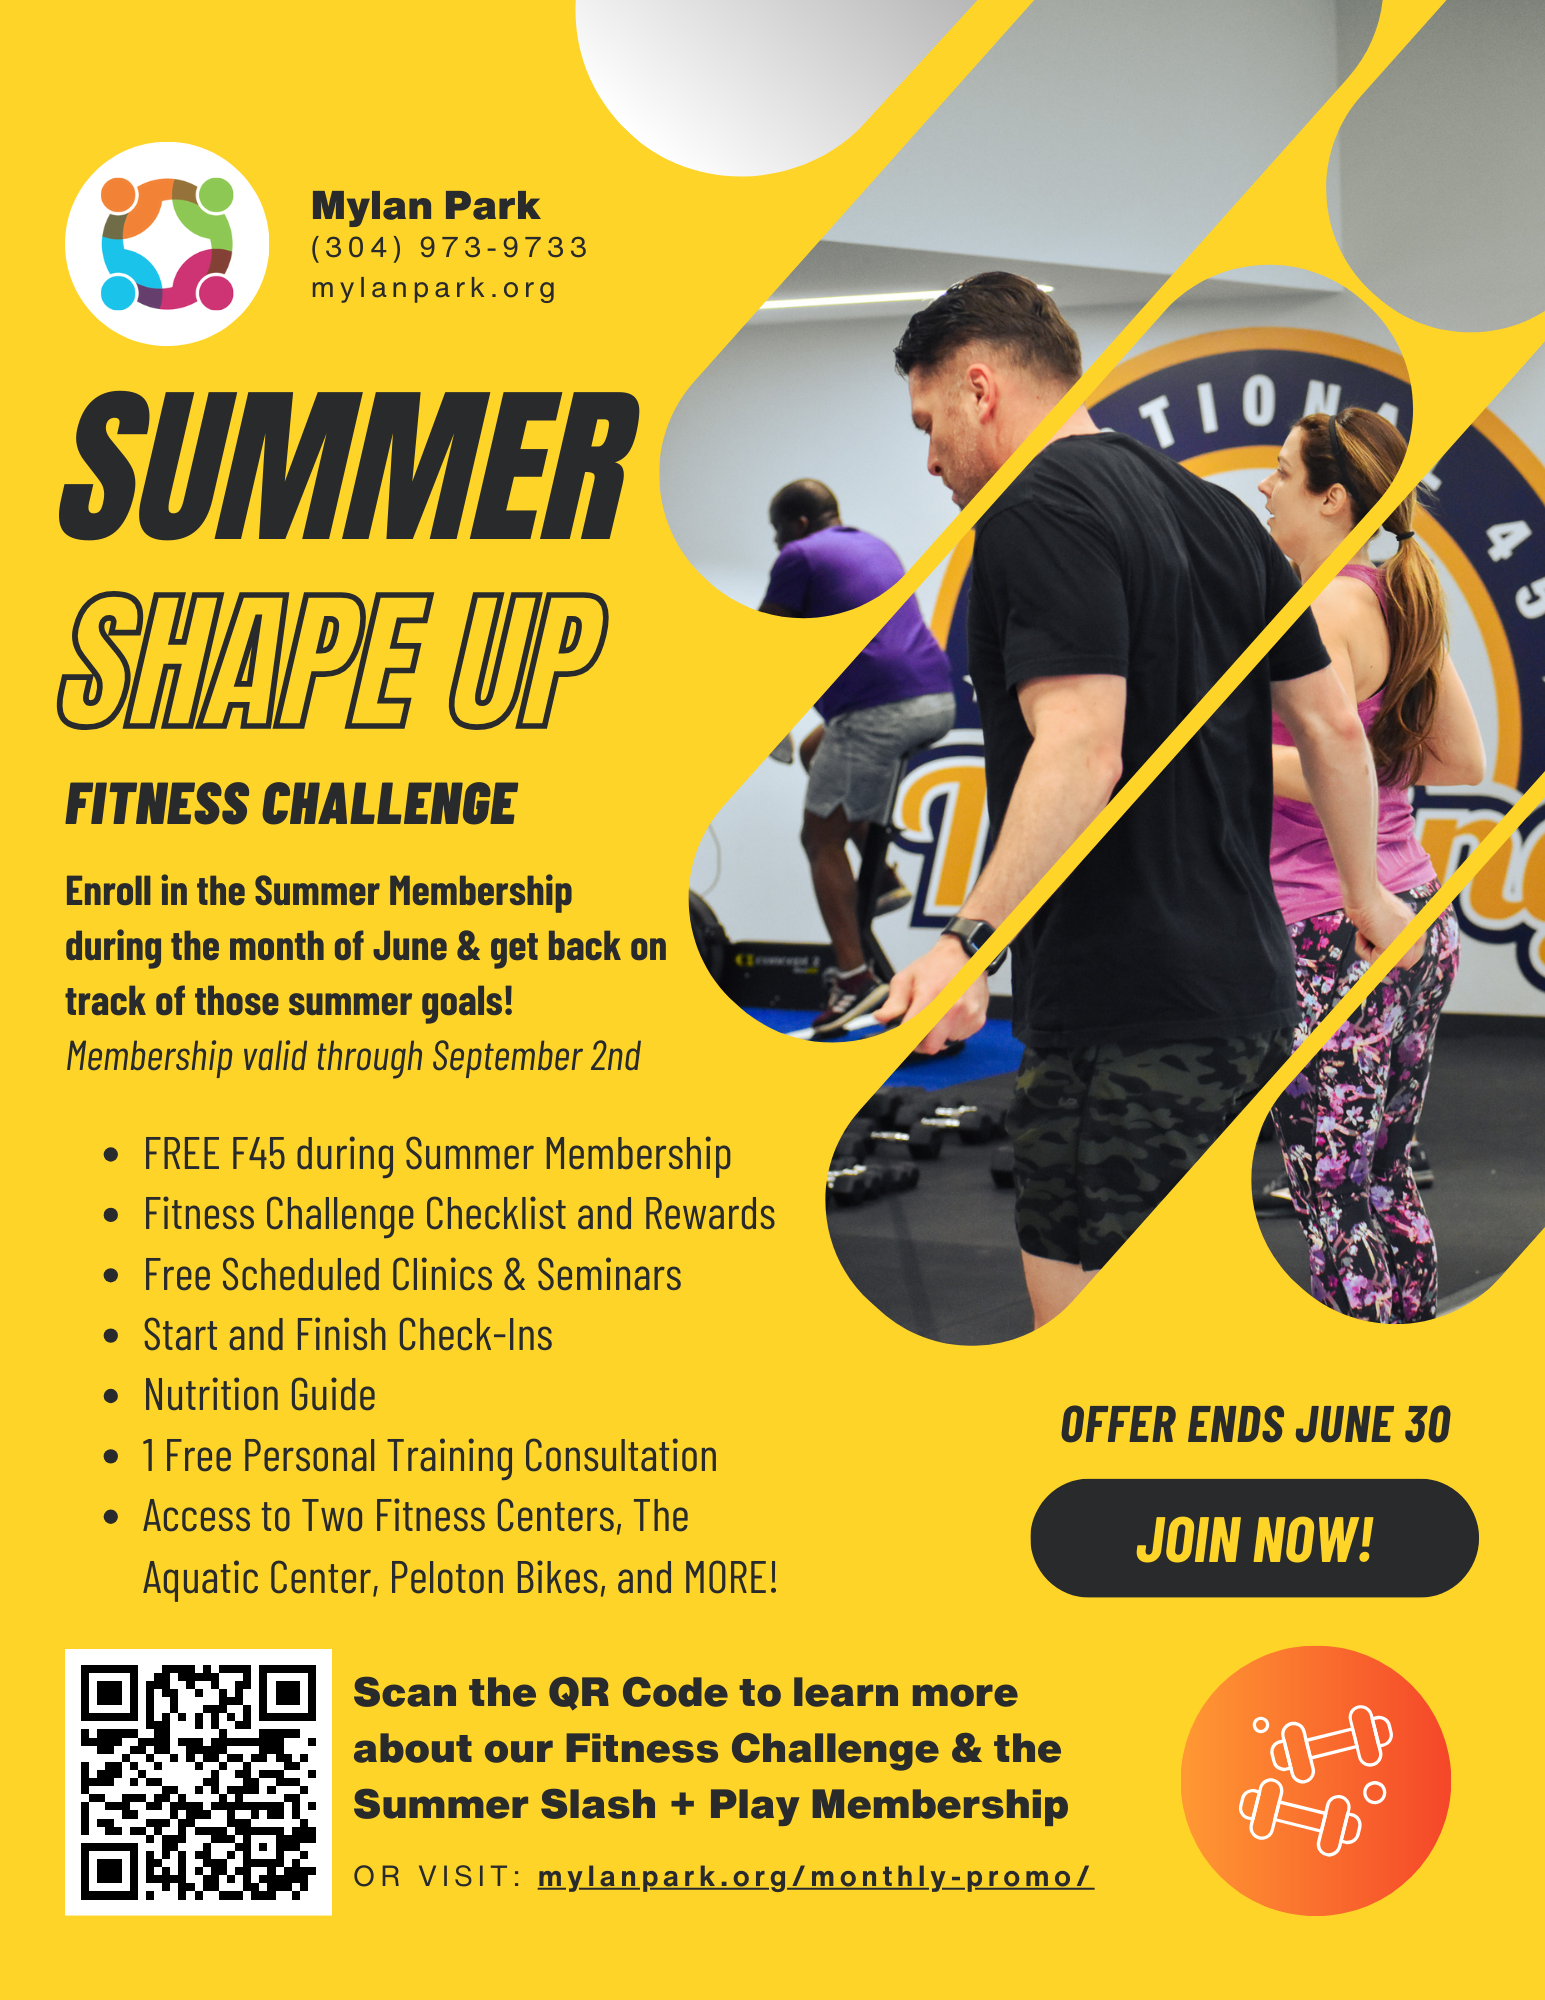 Summer Shape Up Fitness Challenge June 1-30 at Mylan Park